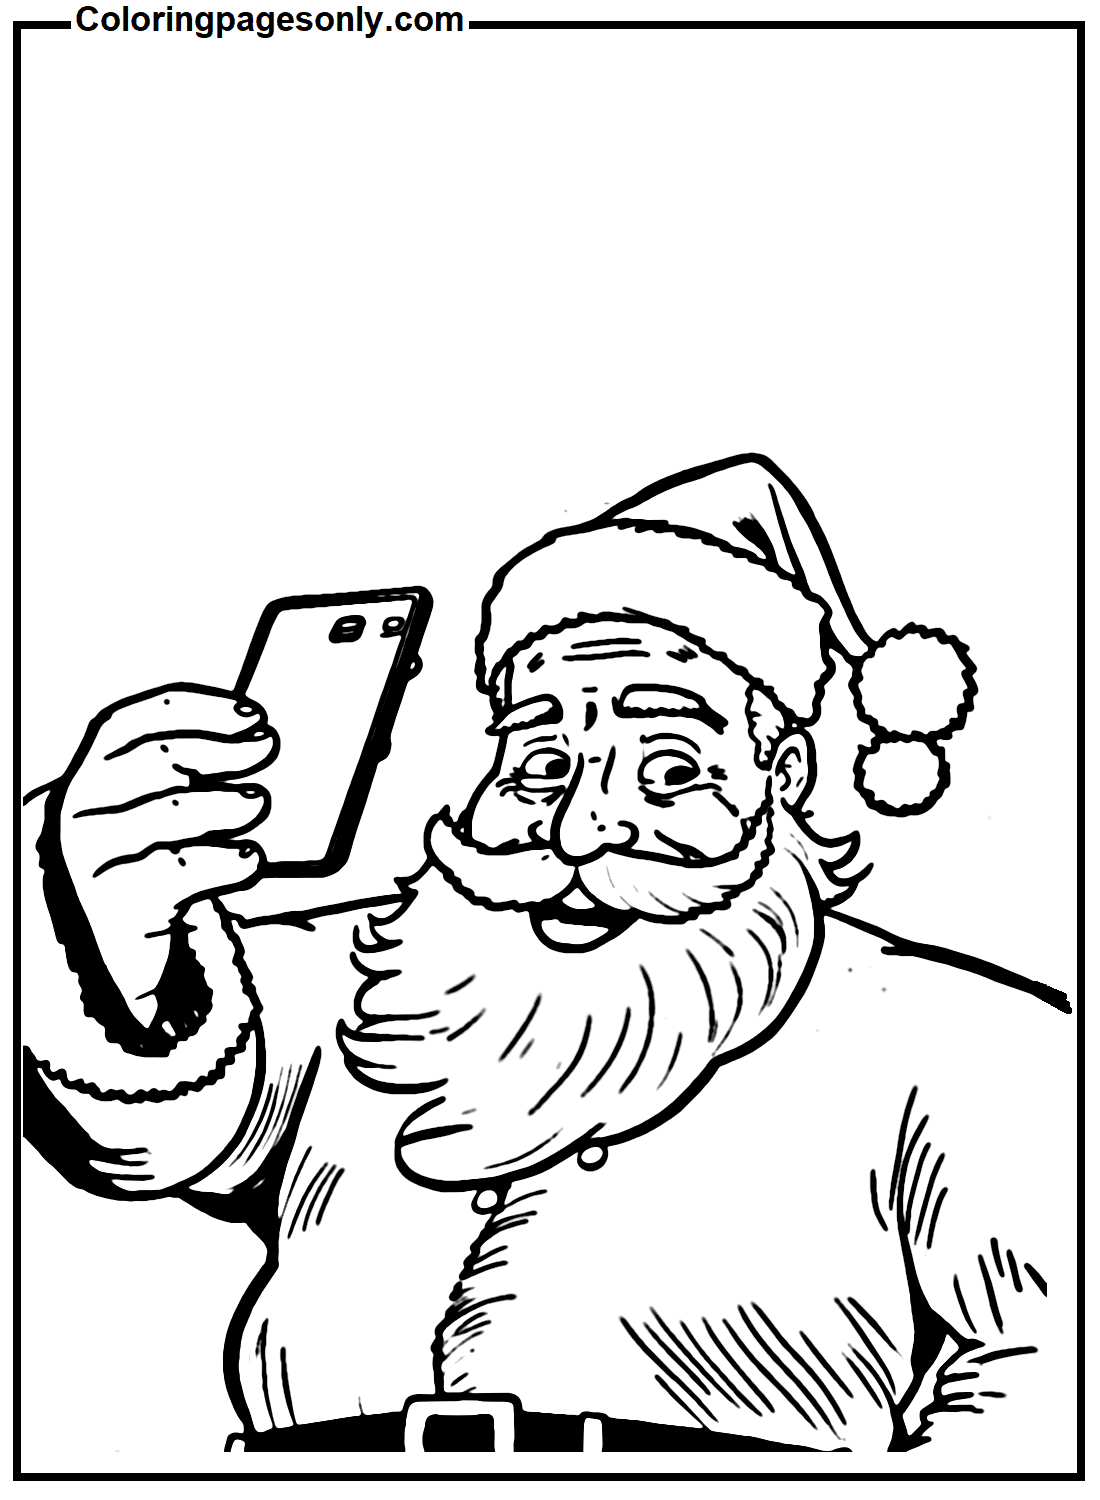 Weihnachtsmann macht Selfie von Selfie